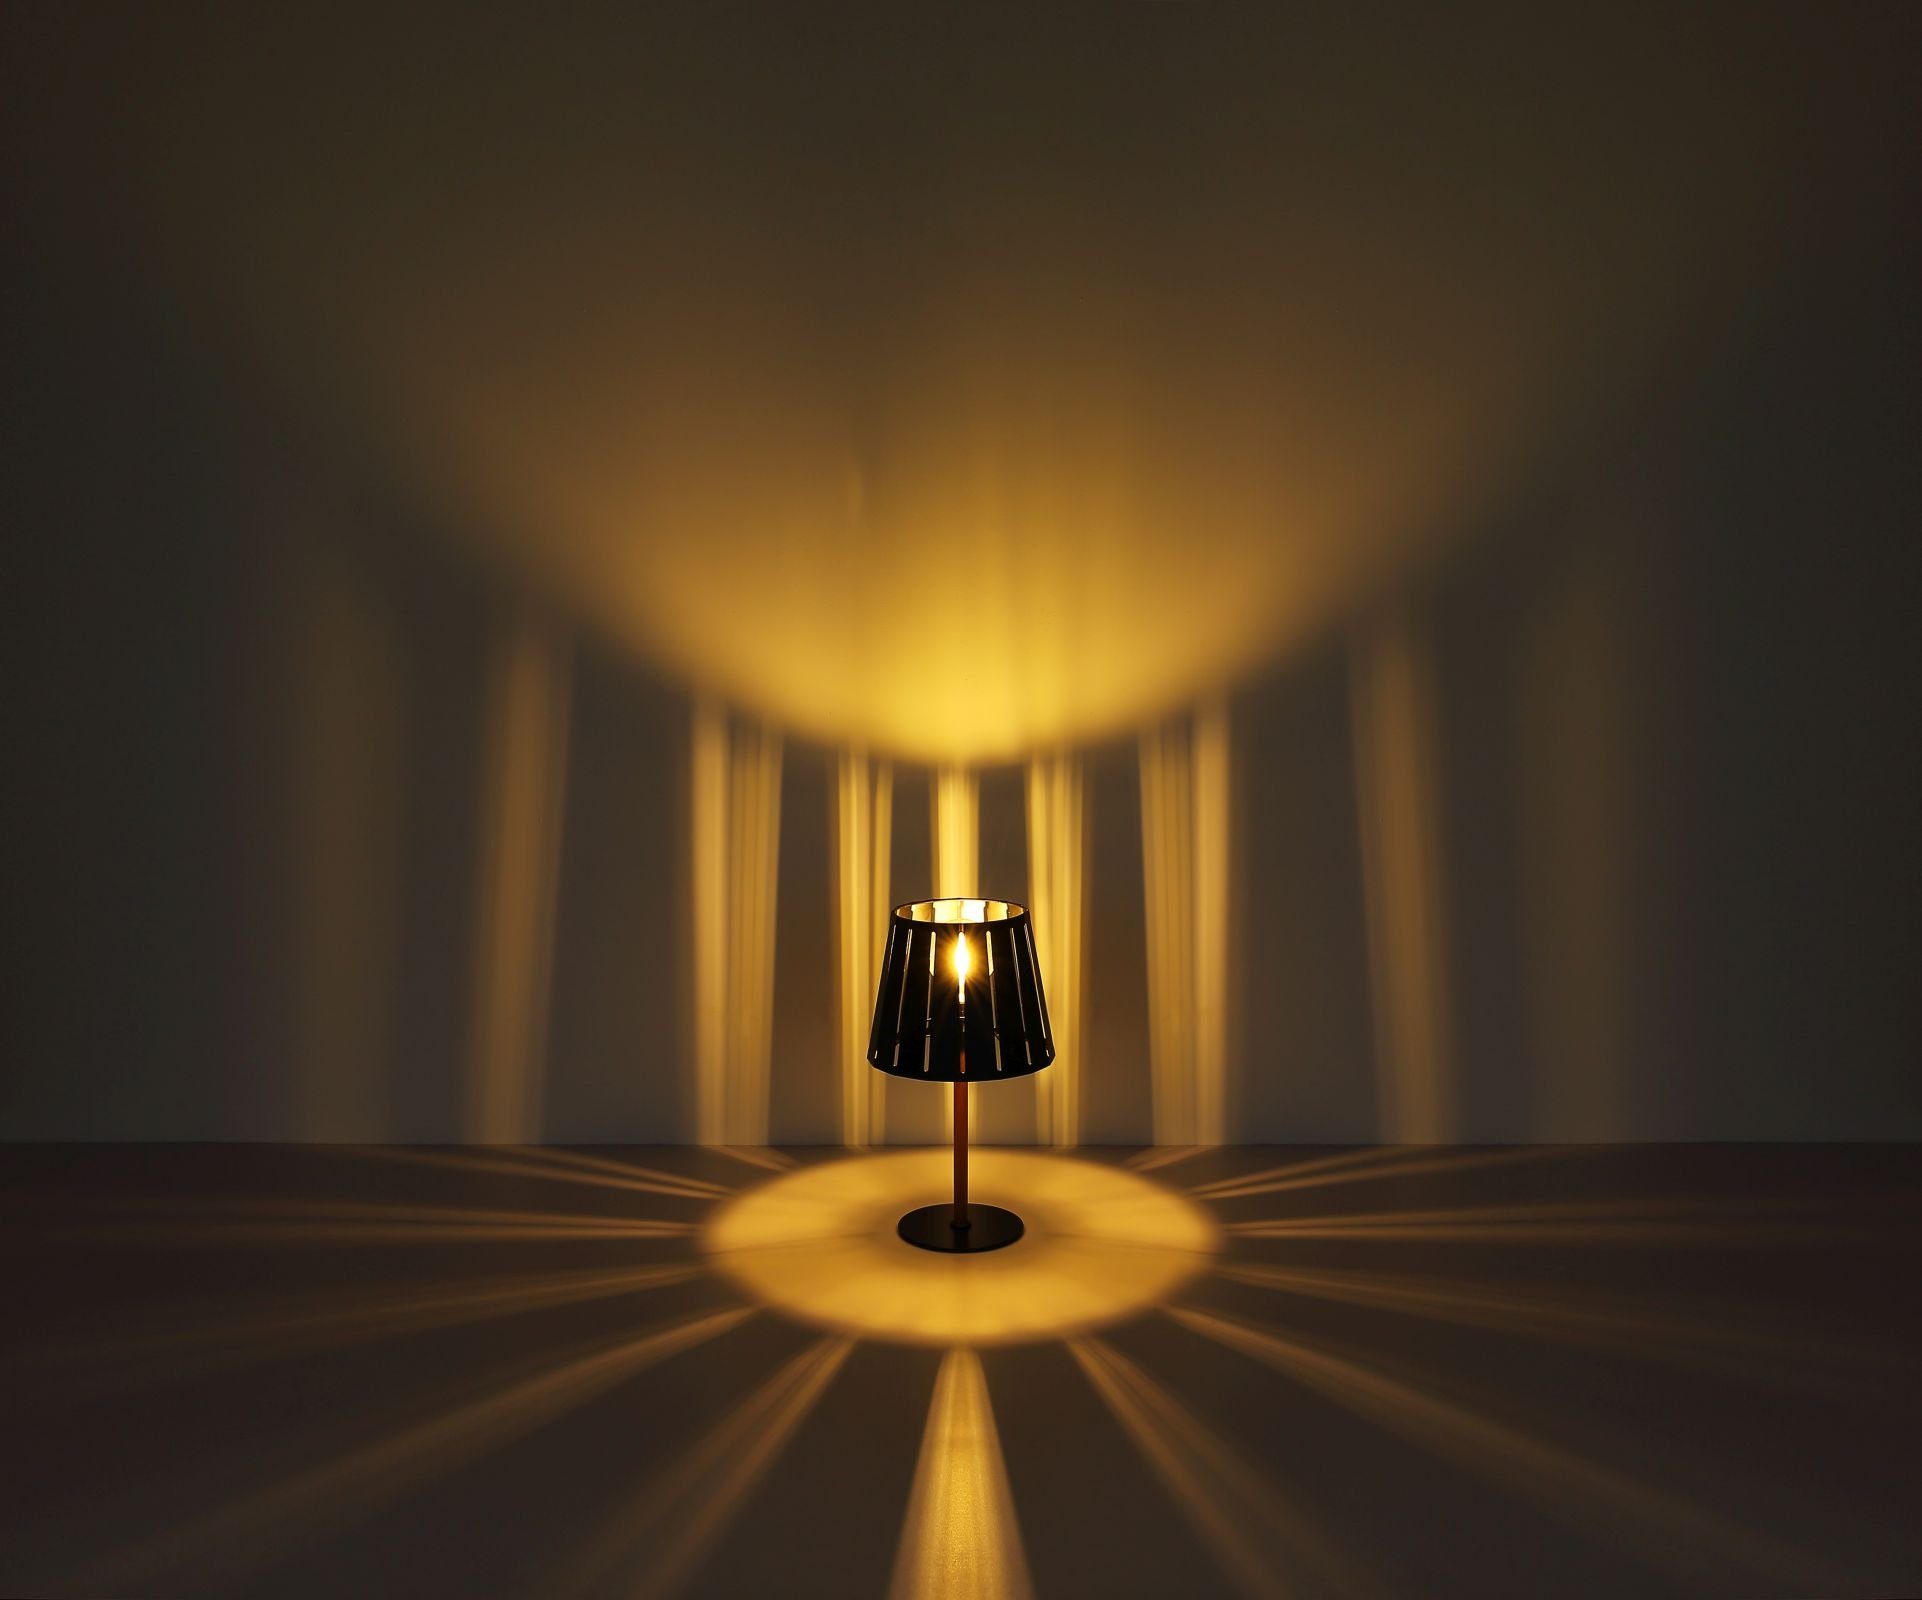 Tischlampe GLOBO Holz Schwarz Tischleuchte Optik Nachttischlampe Globo Tischleuchte